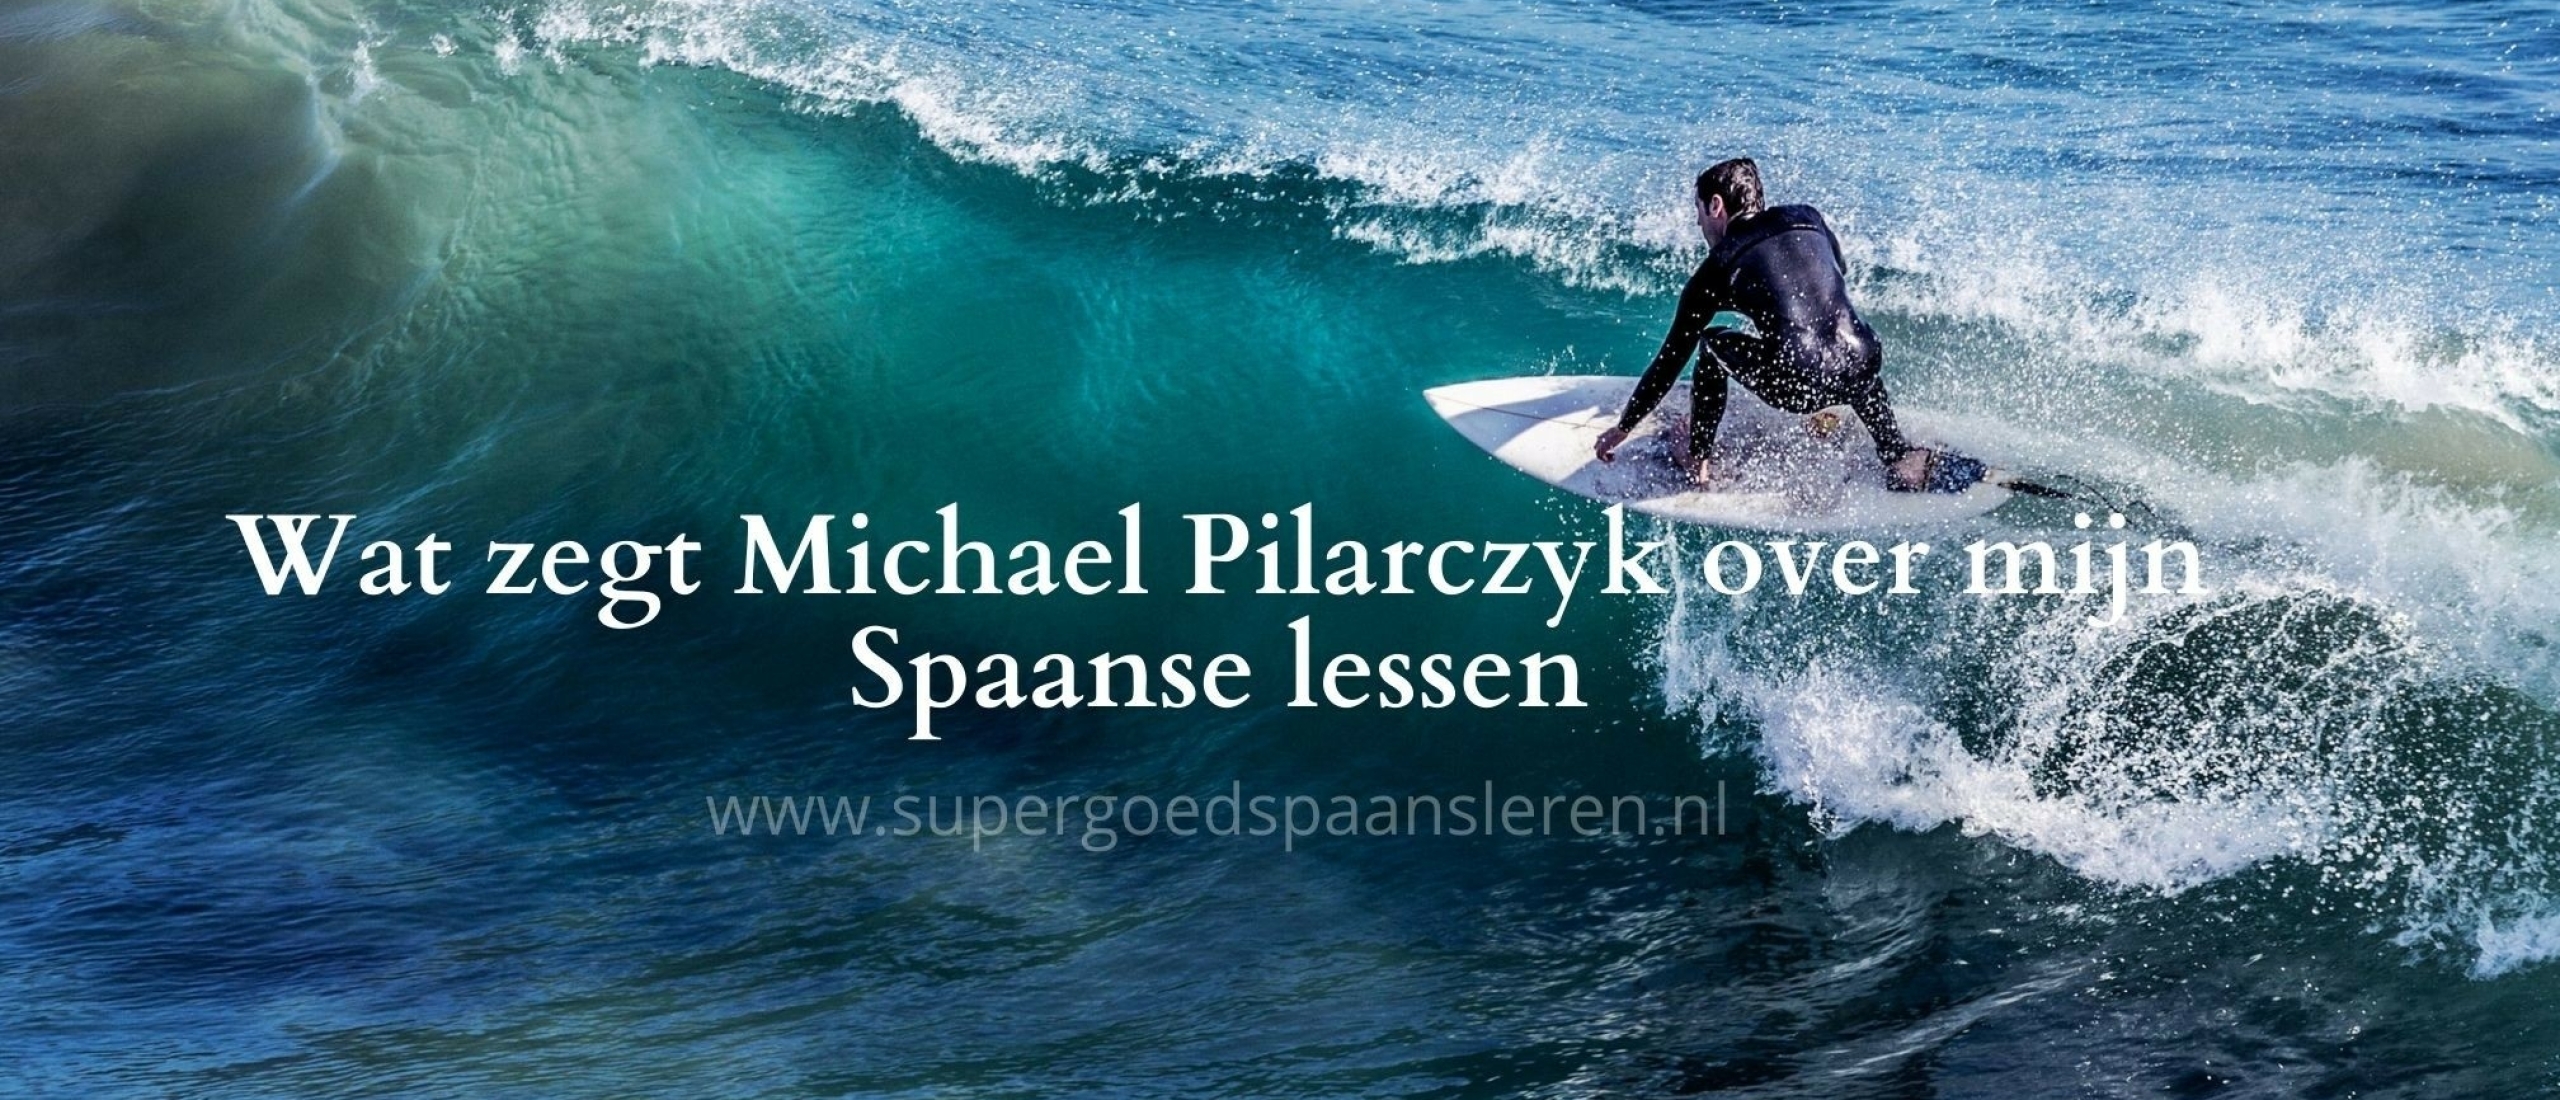 Wat zegt Michael Pilarczyk over mijn Spaanse lessen